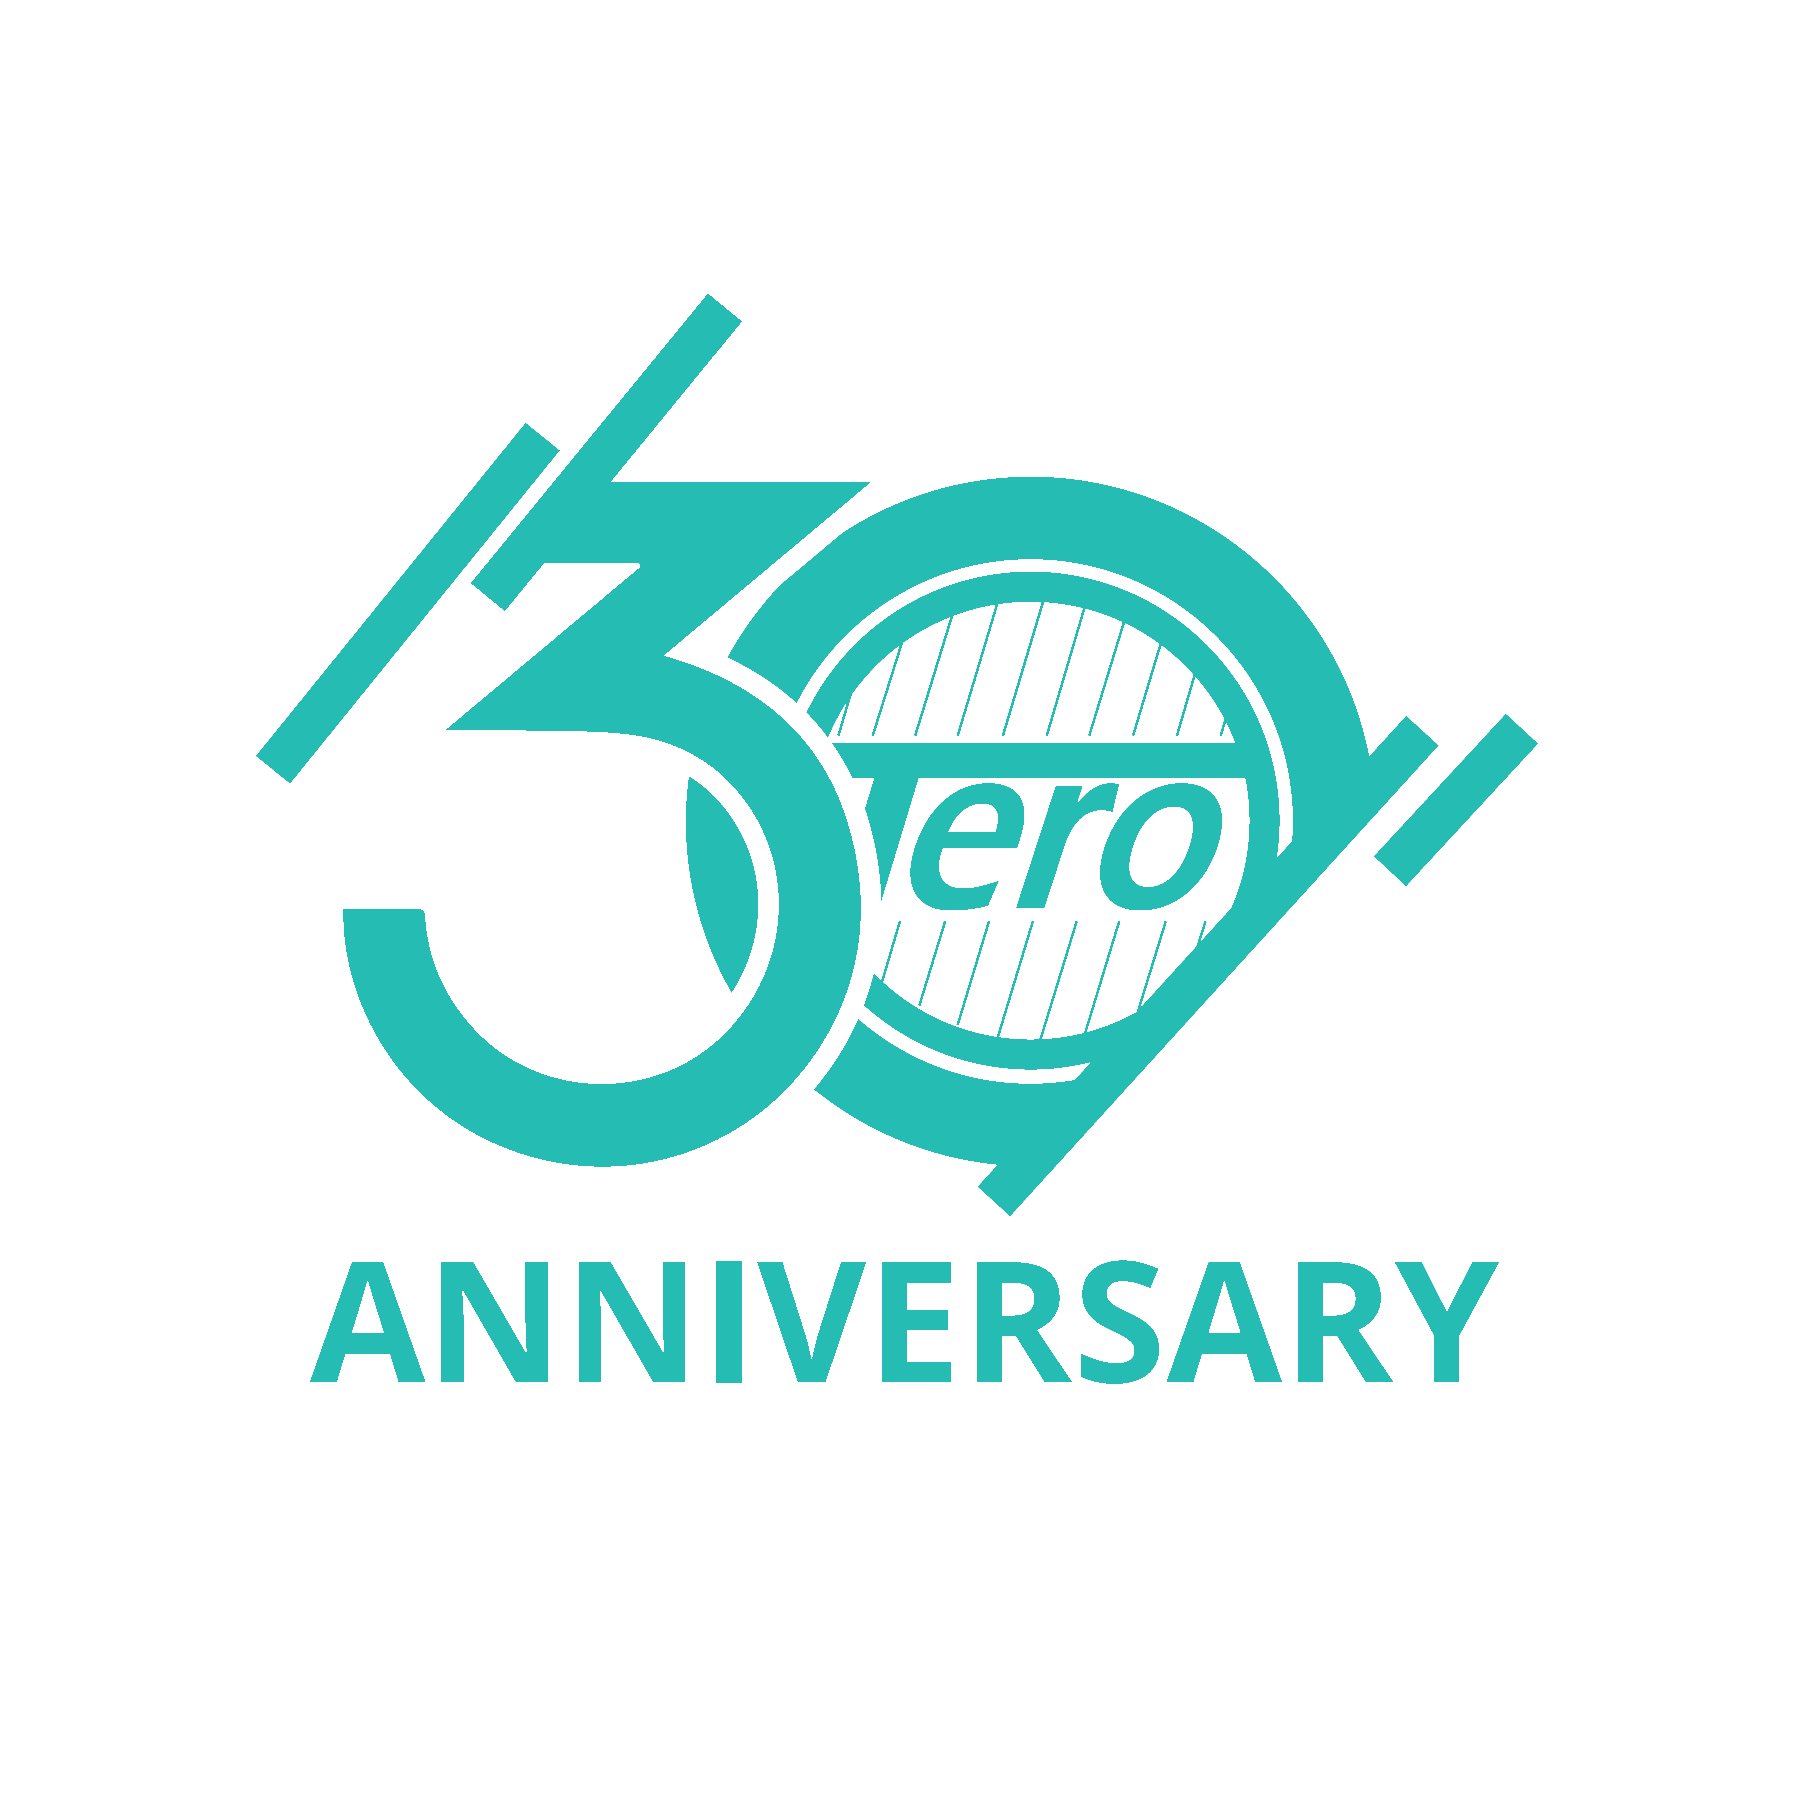 Tero 30th Anniversary Celebration